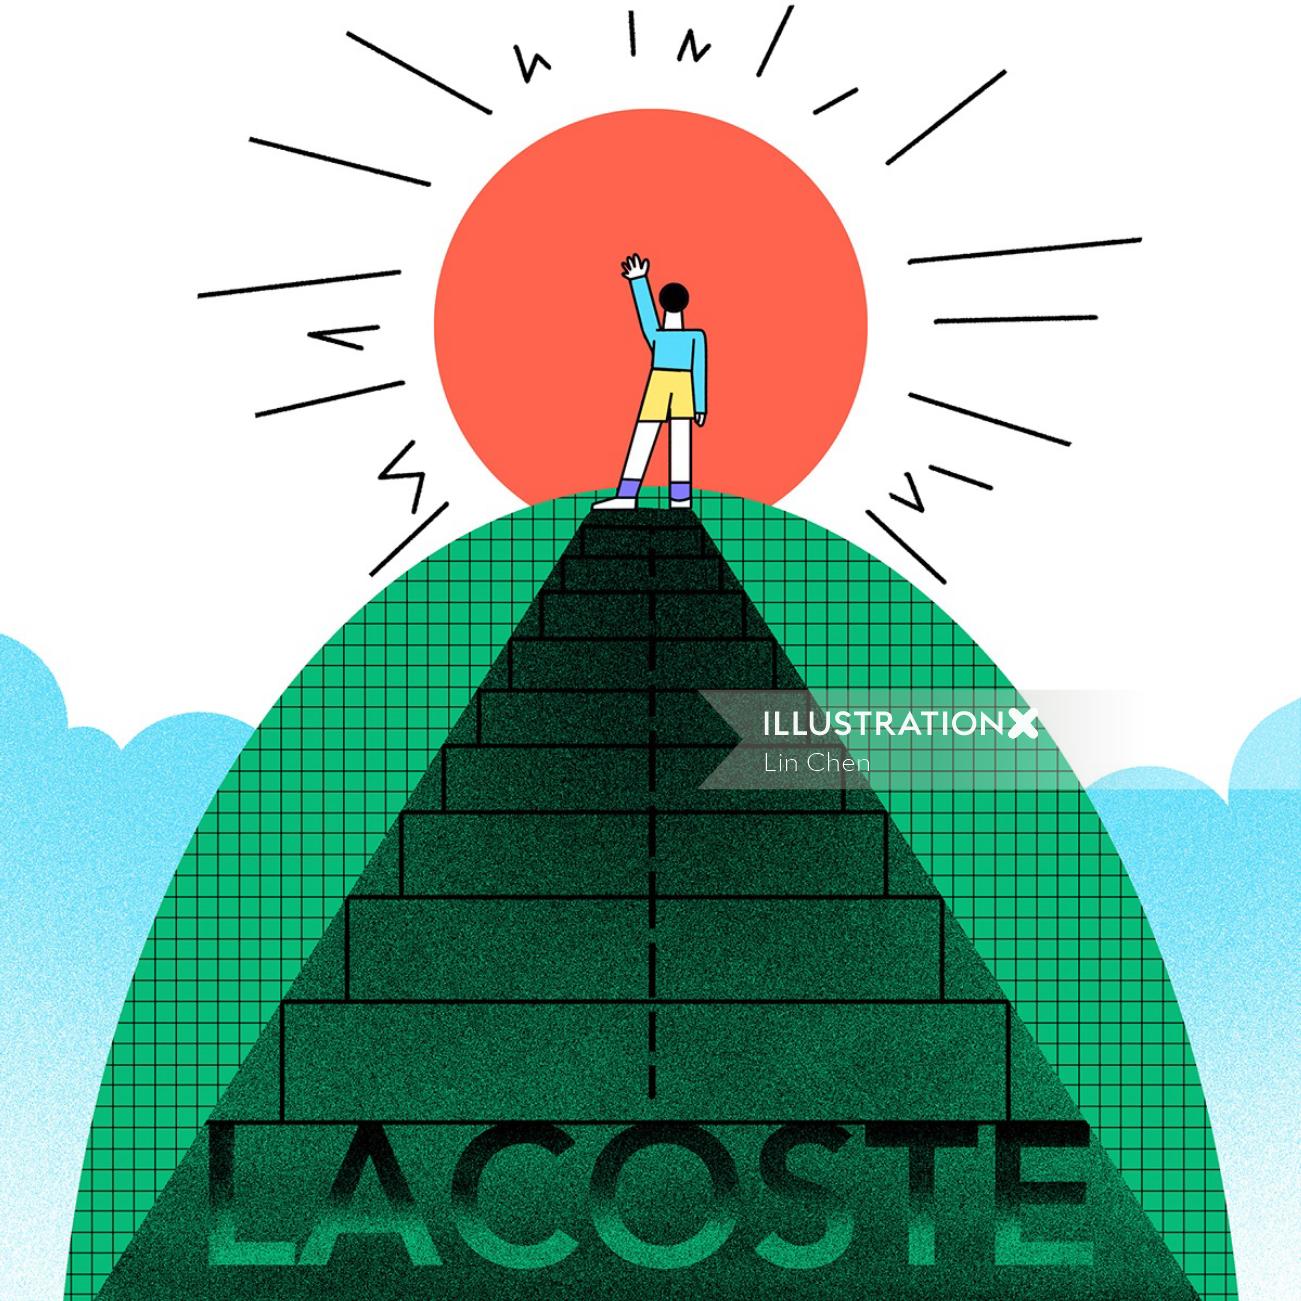 Illustration éditoriale pour Lacoste par Lin Chen